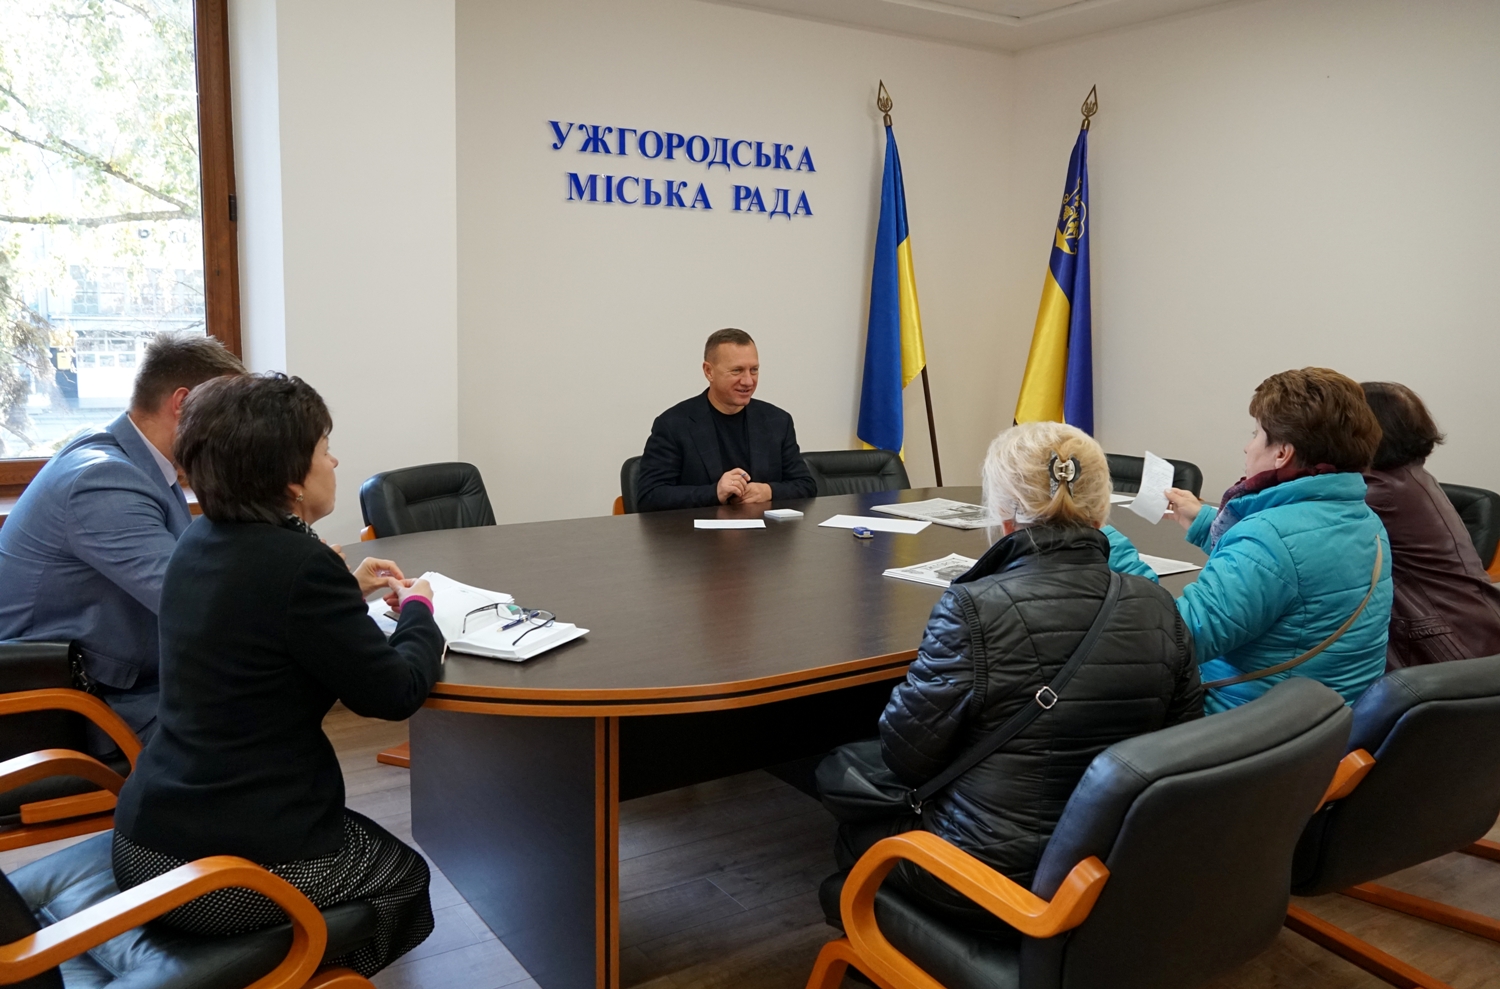 Міський голова Ужгорода Богдан Андріїв сьогодні провів черговий особистий прийом громадян